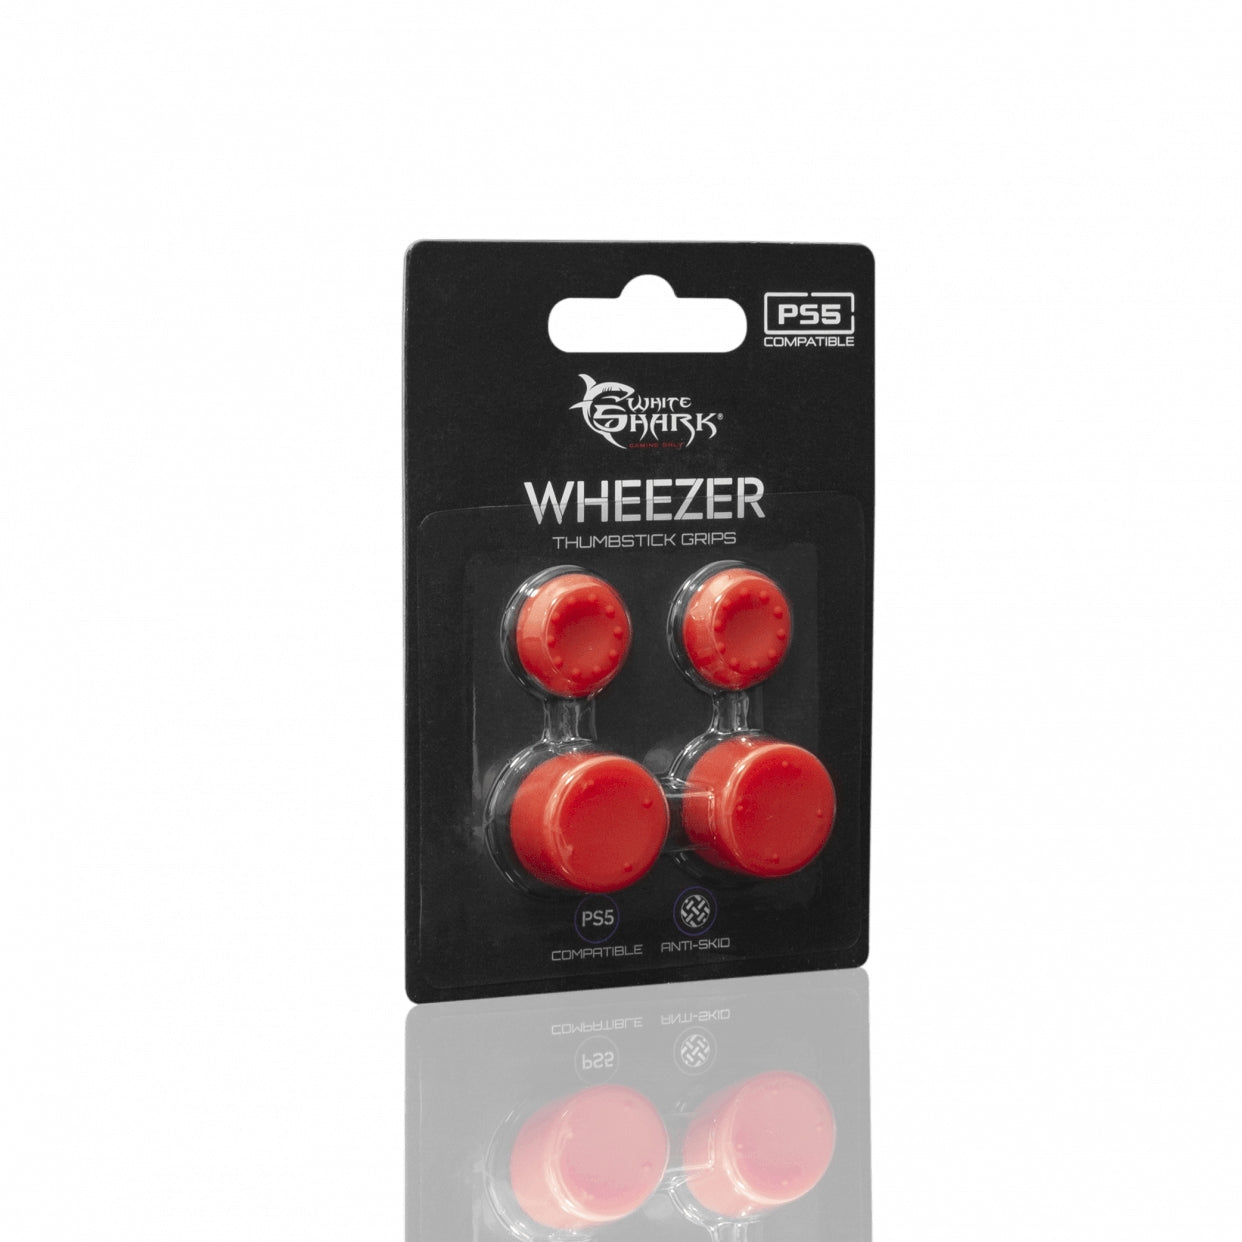 White Shark PS5-817 Wheezer Red Силиконовые накладки для большого пальца для контроллера PS5, красные